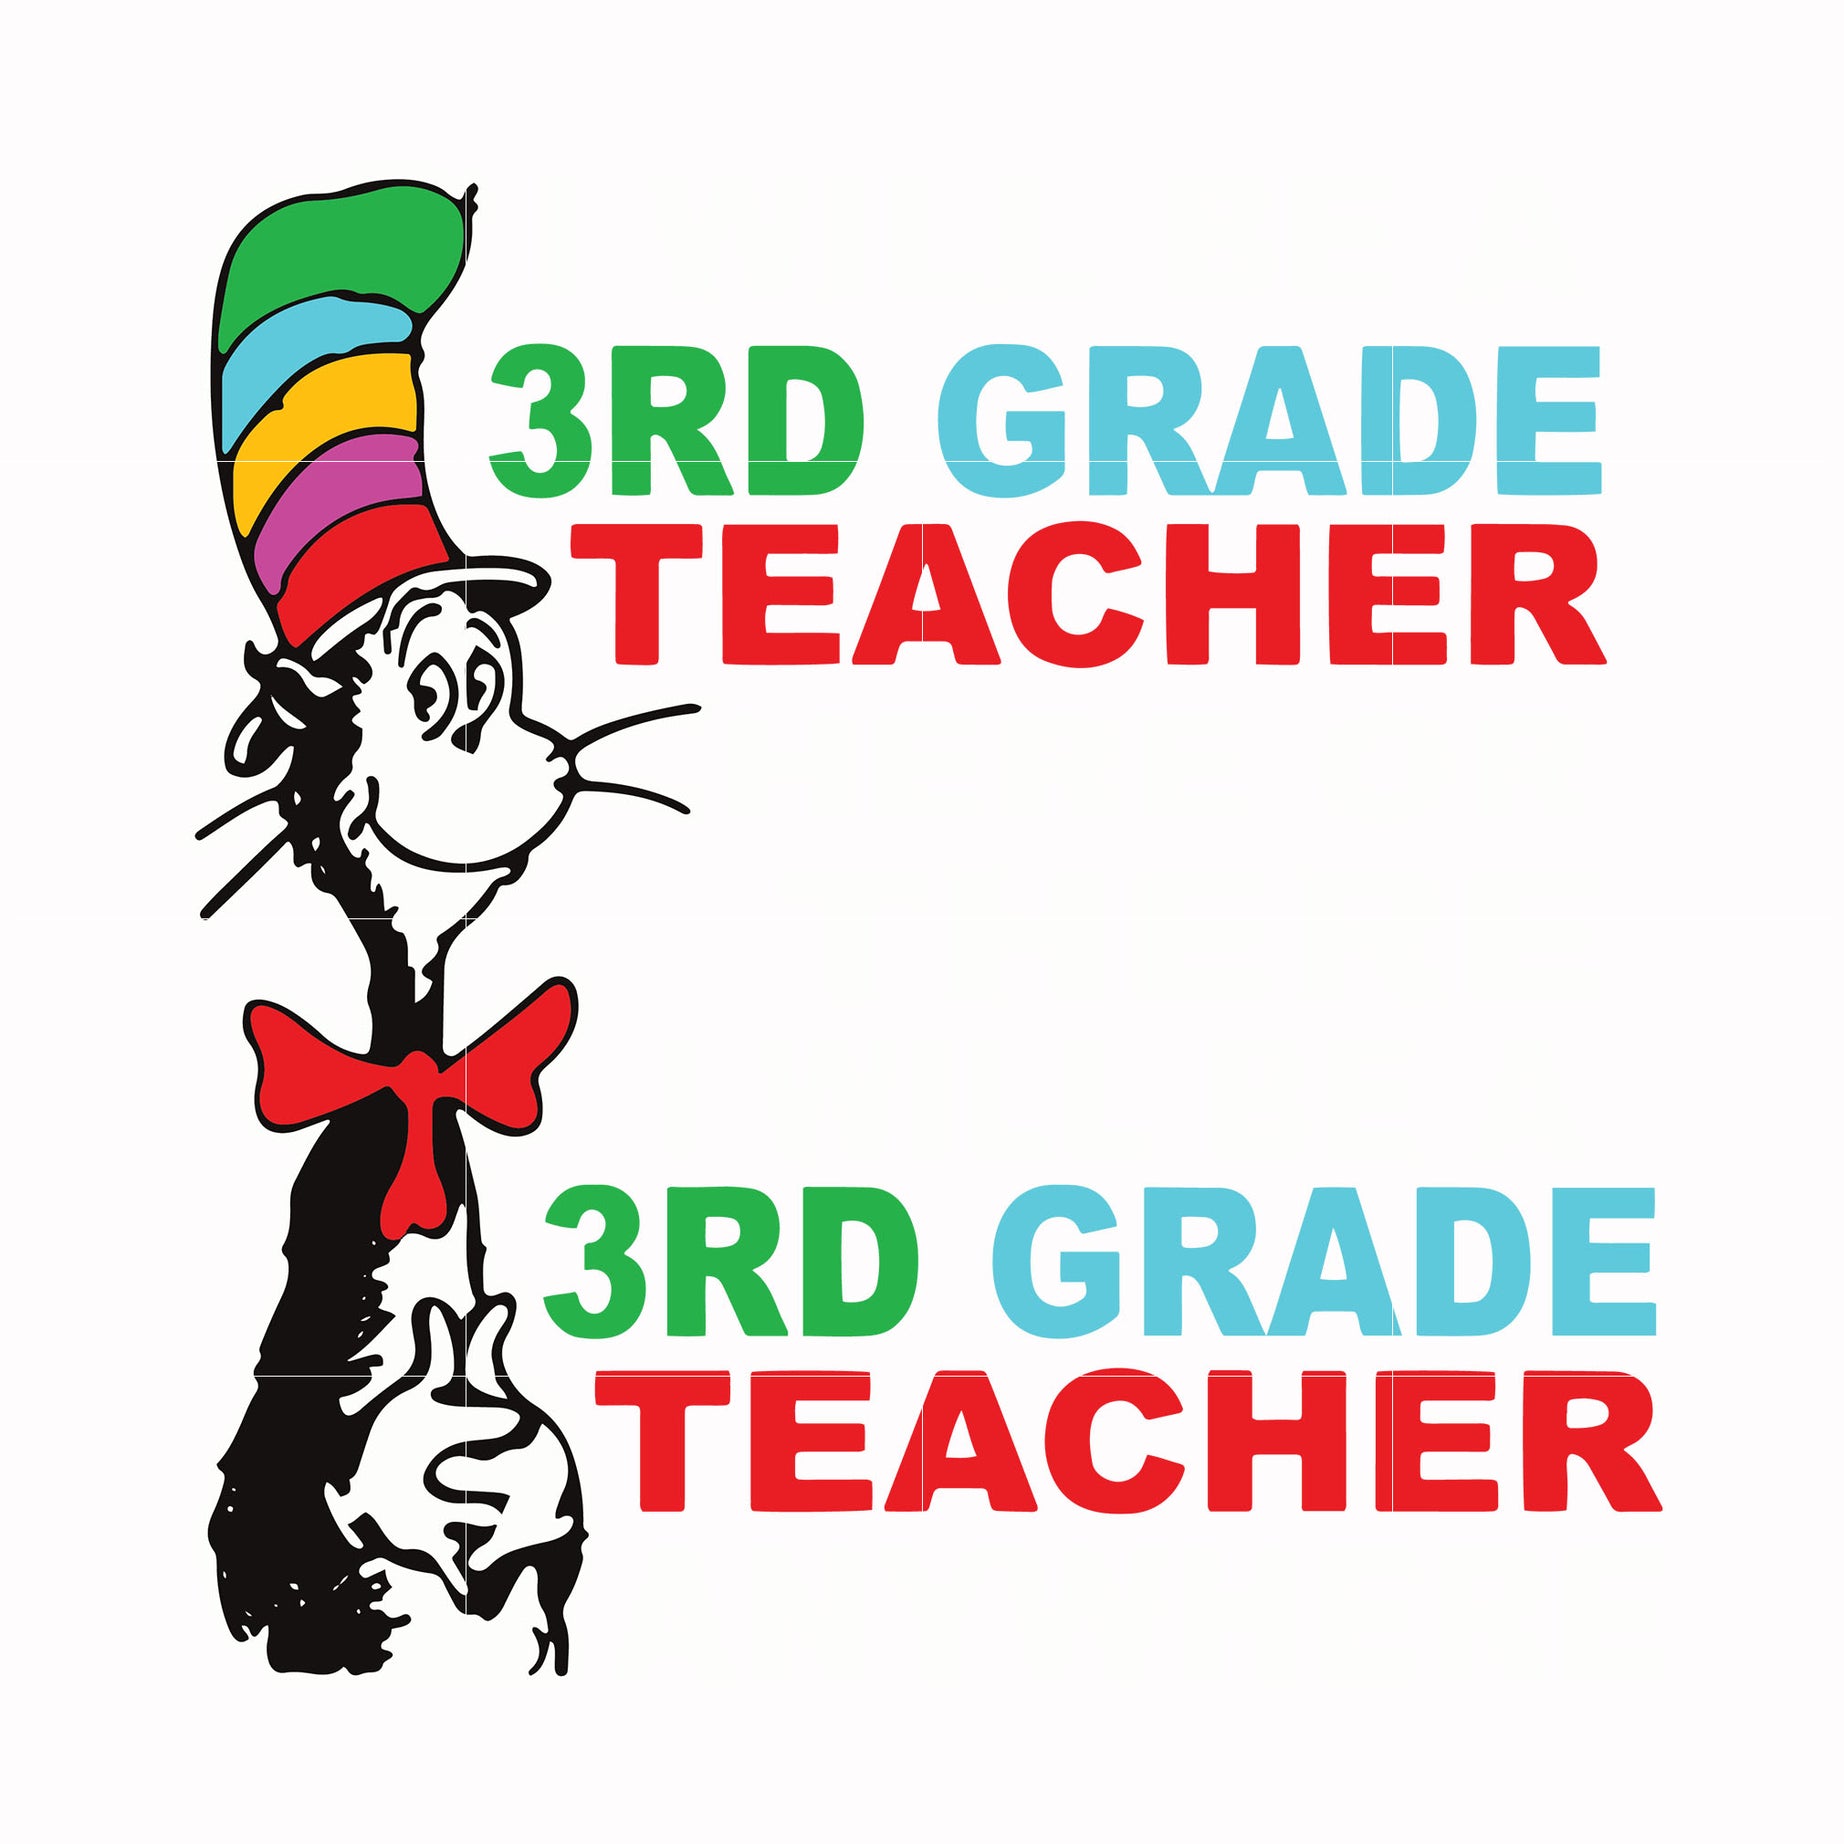 3rd grade teacher svg, png, dxf, eps file DR00033